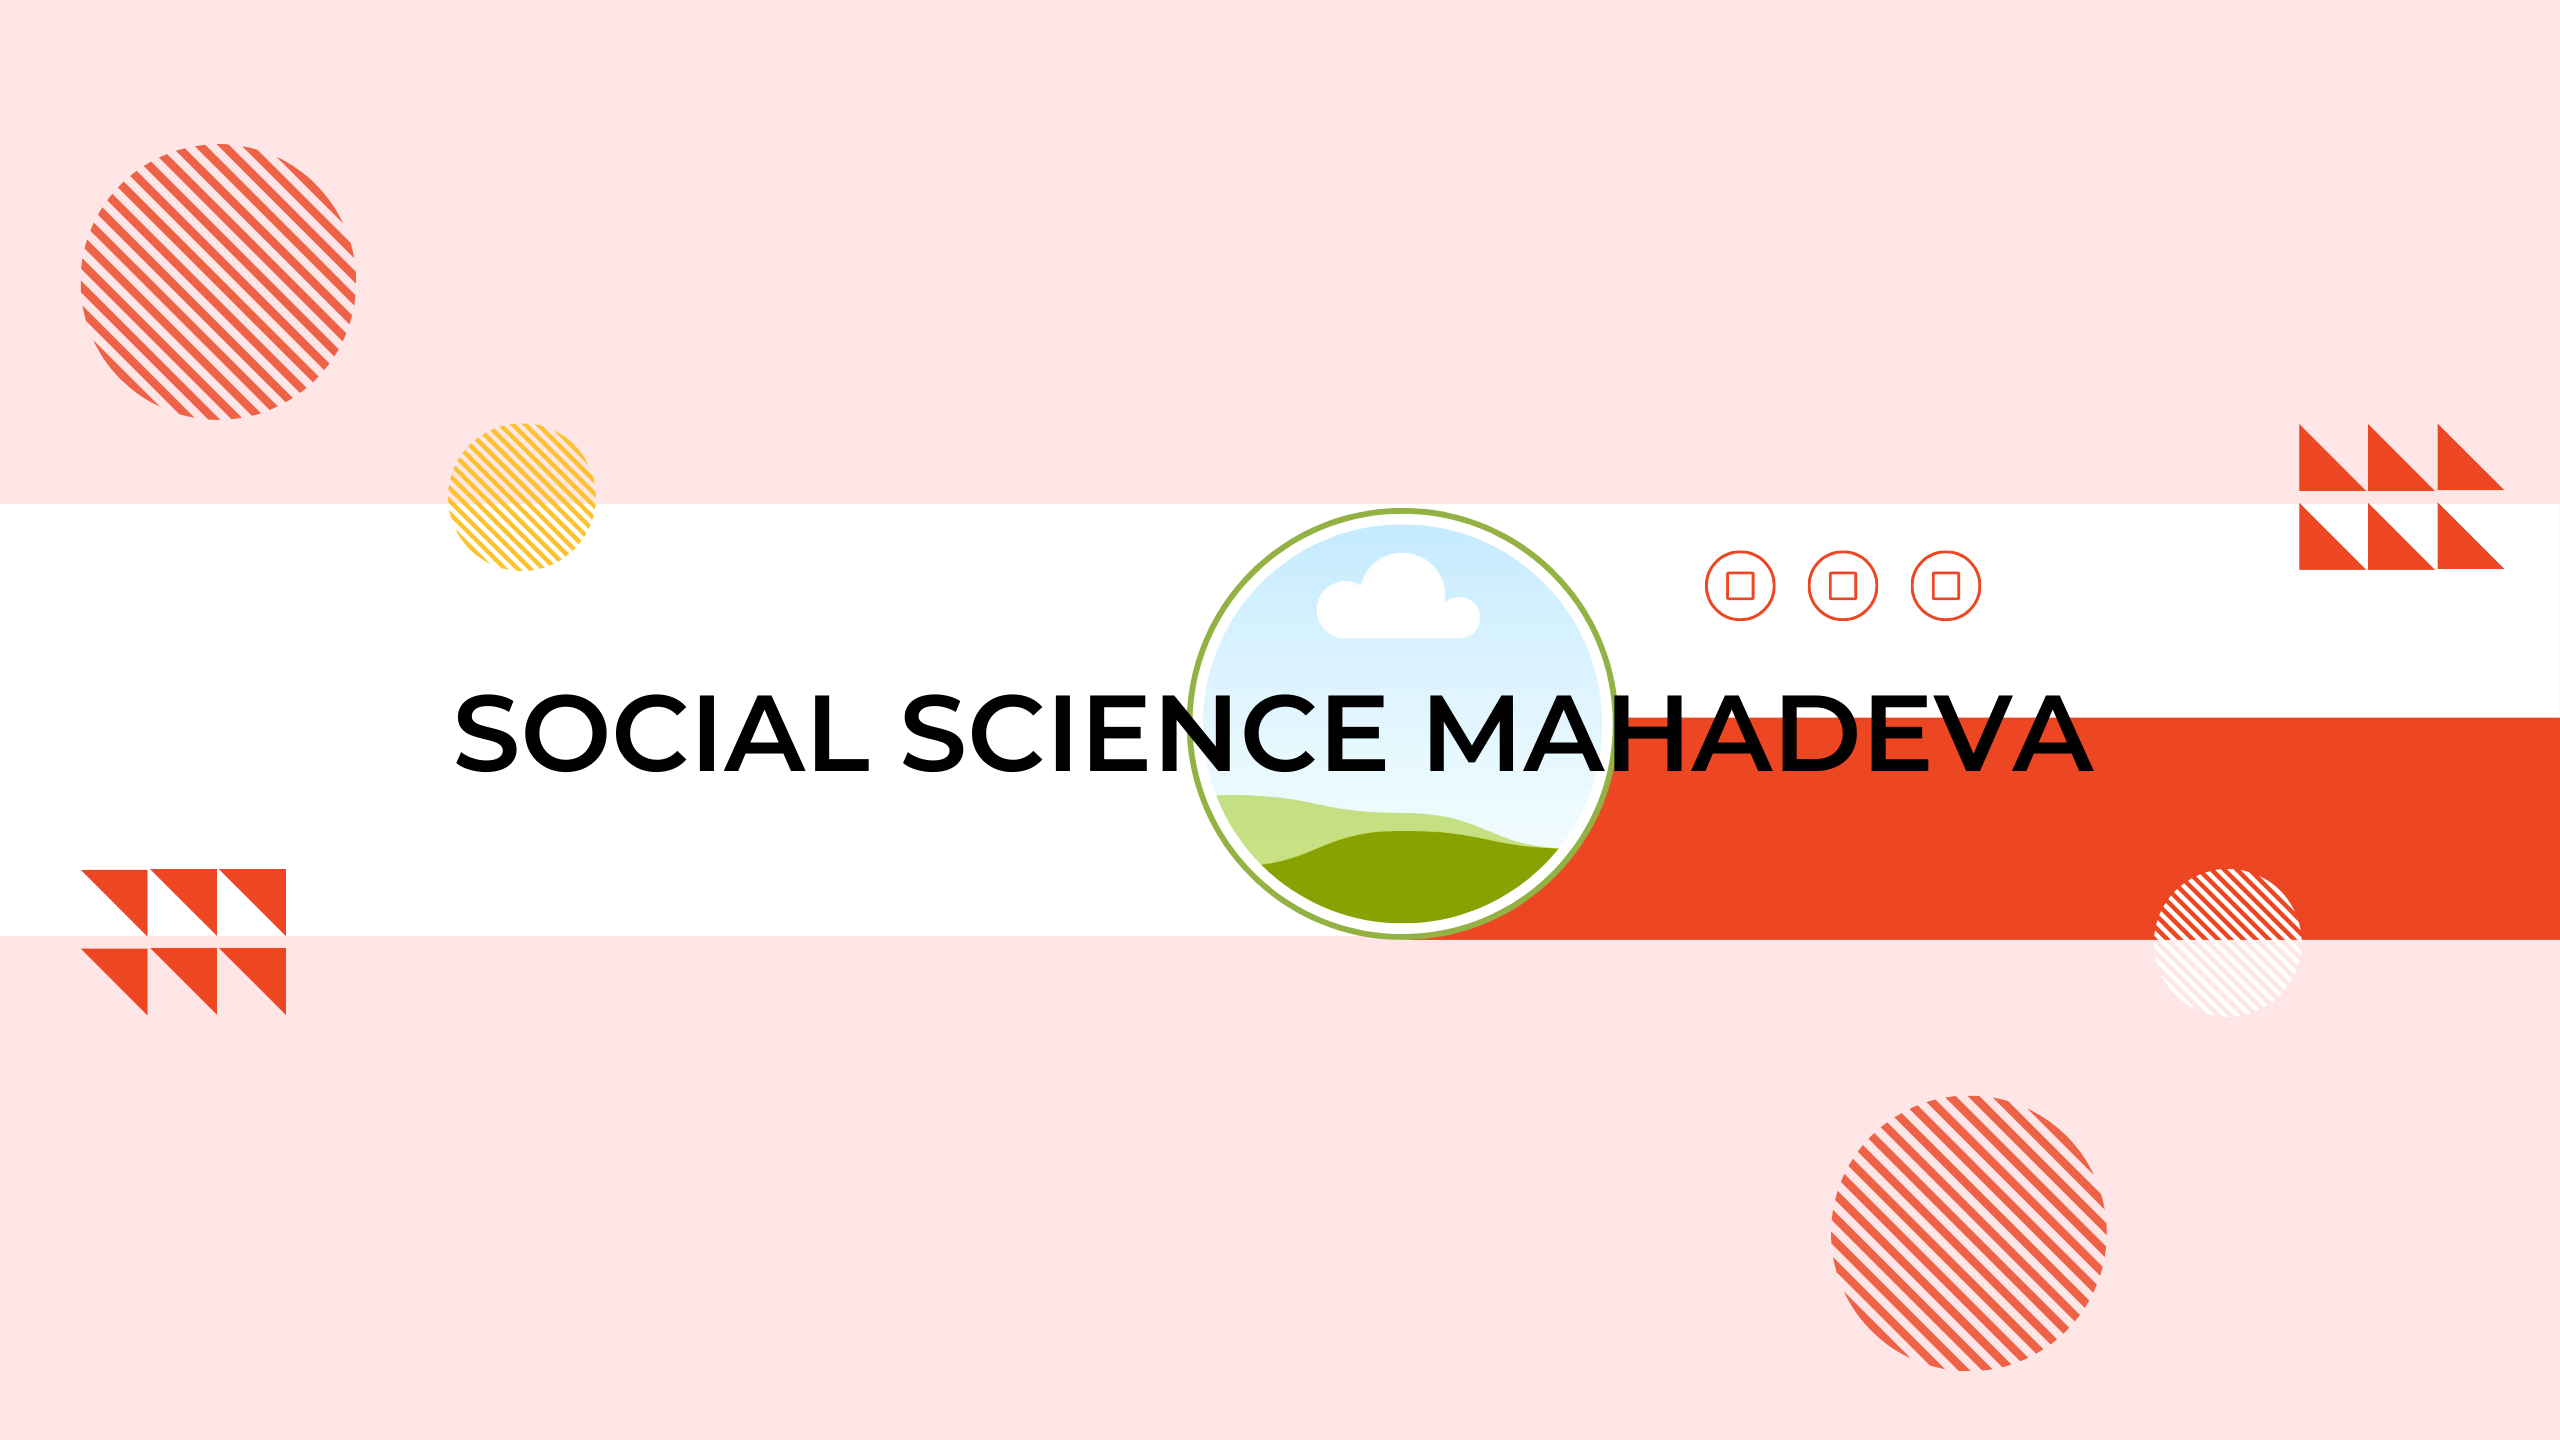 SOCIAL SCIENCE MAHADEVA